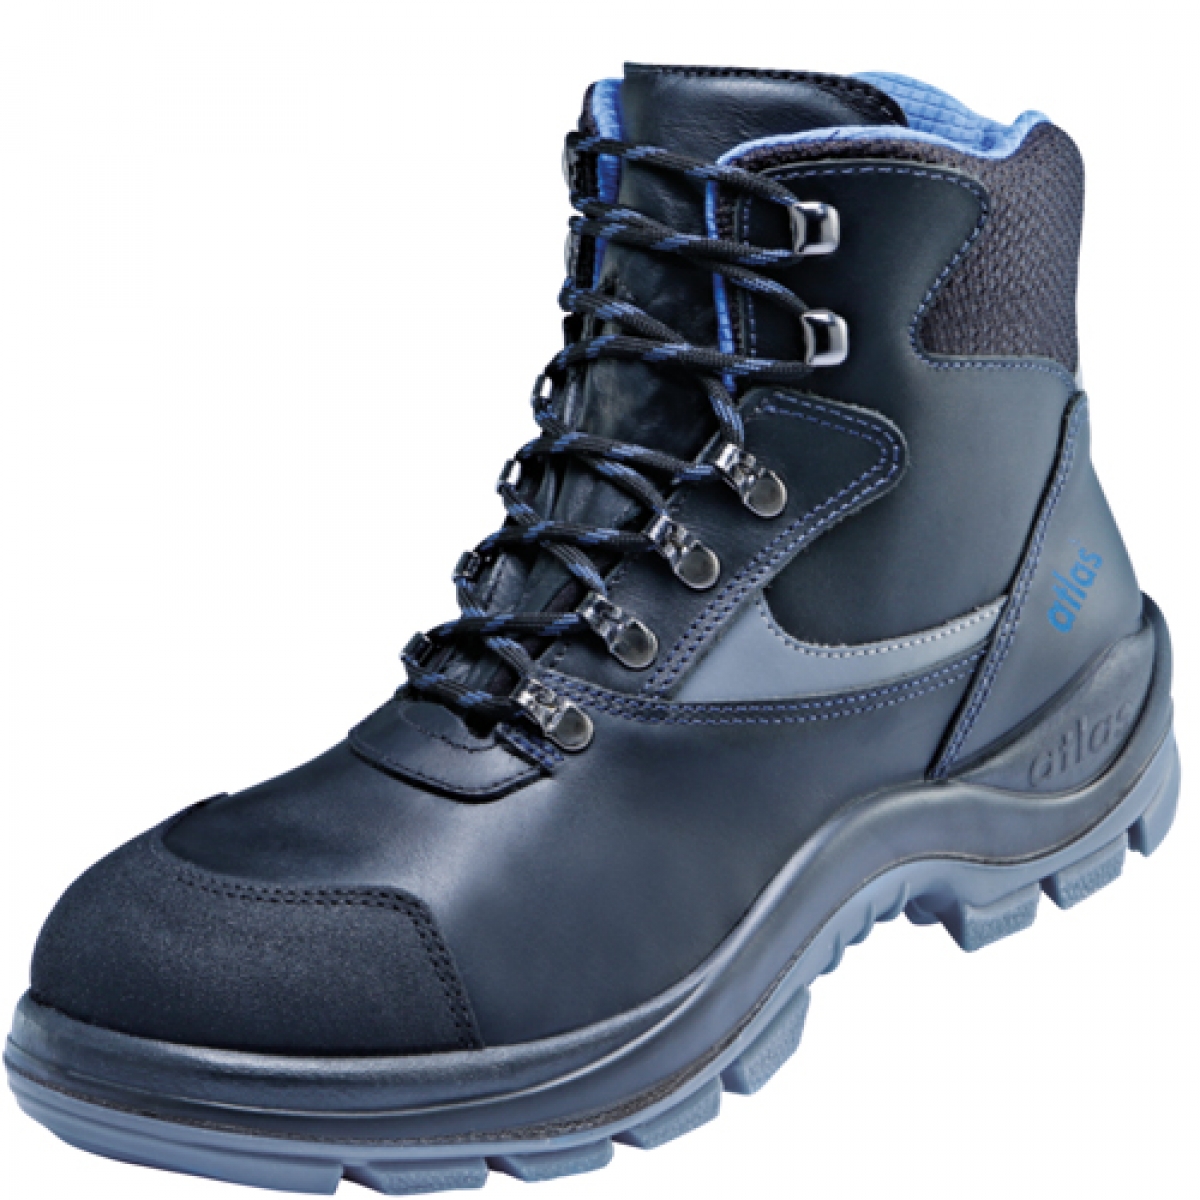 Atlas-Footwear, S3 Arbeits-Berufs-Sicherheits-Schuhe, Hochschuhe, ERGO-MED DUO 737, Weite: 12, schwarz